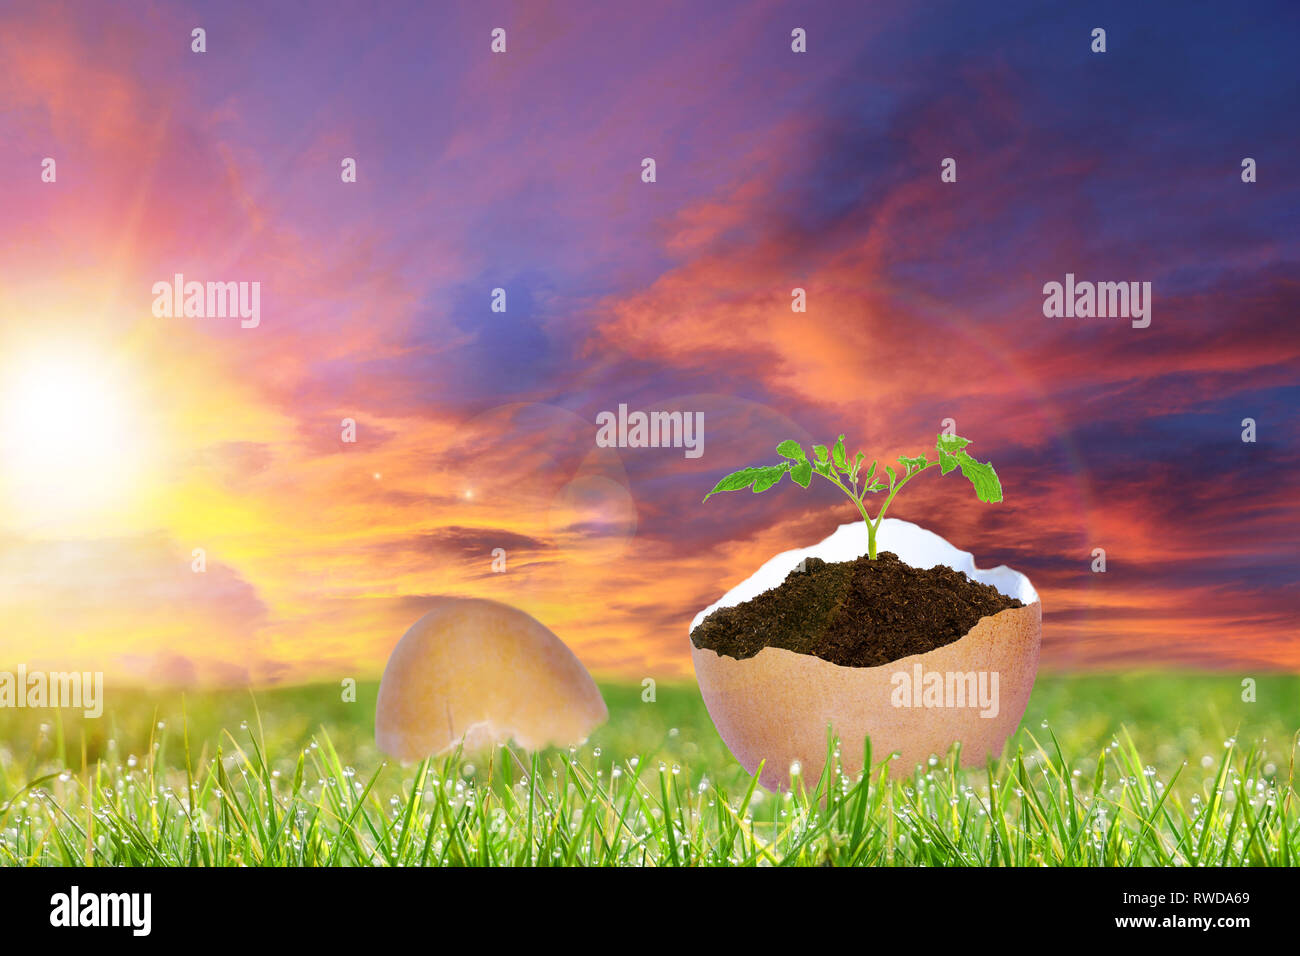 Dimanche de Pâques le lever du soleil sur un paysage avec des œufs de Pâques nouveau fissurée montrant la vie des plantes en croissance, symbolisant le message du Christianisme de la tombe vide de Banque D'Images